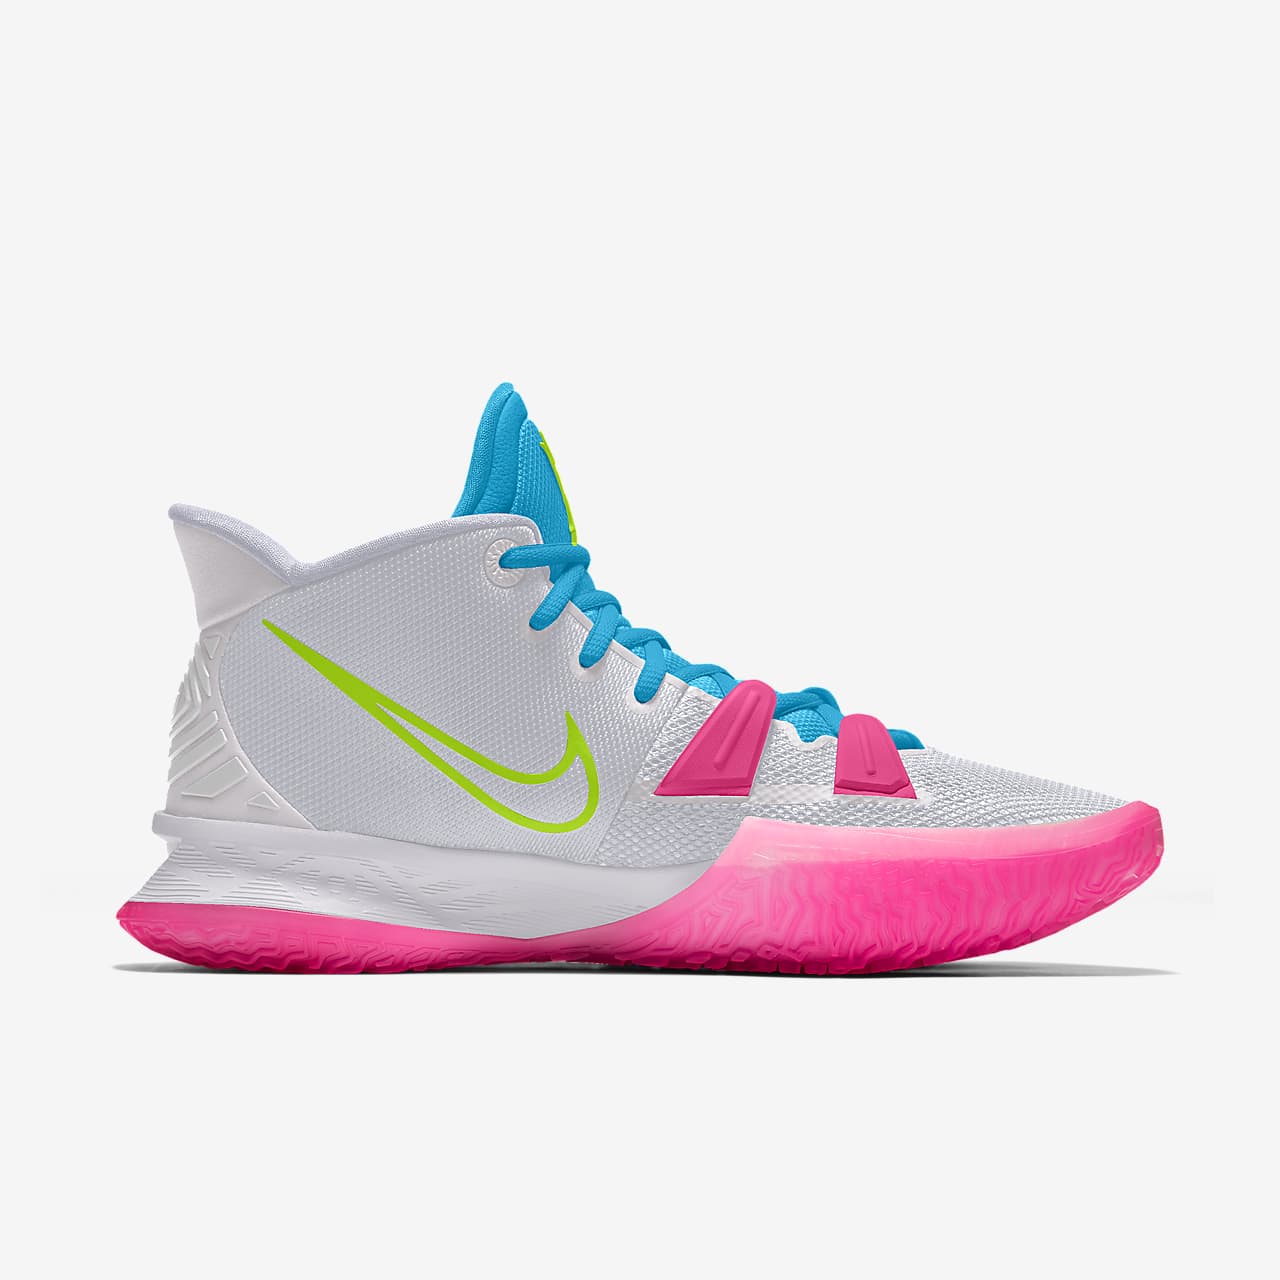 kyrie 5 by you custom basketball shoe